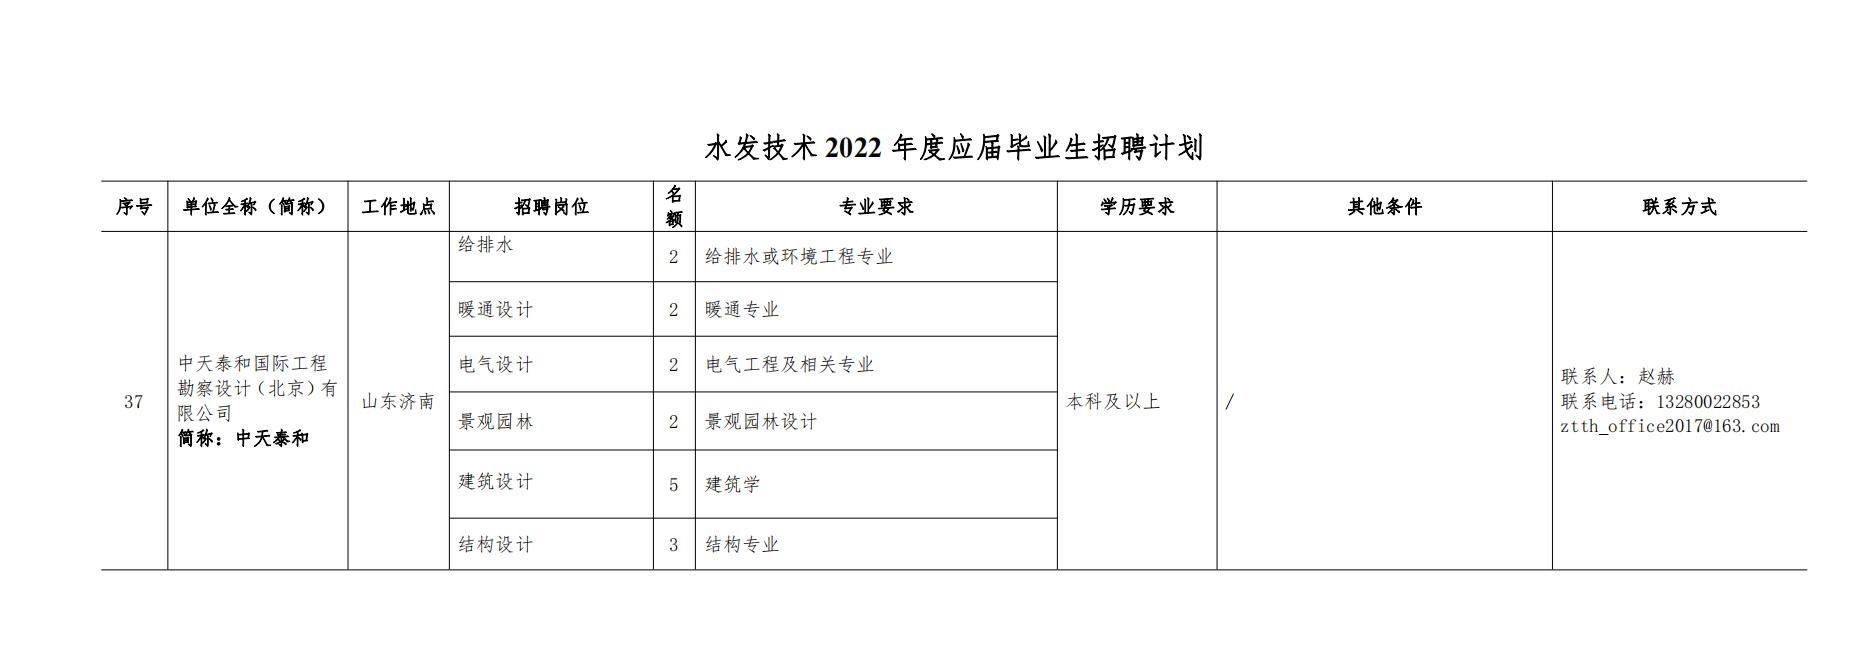 J9集团技術2022年度校園招聘公告 - 副本_00.jpg